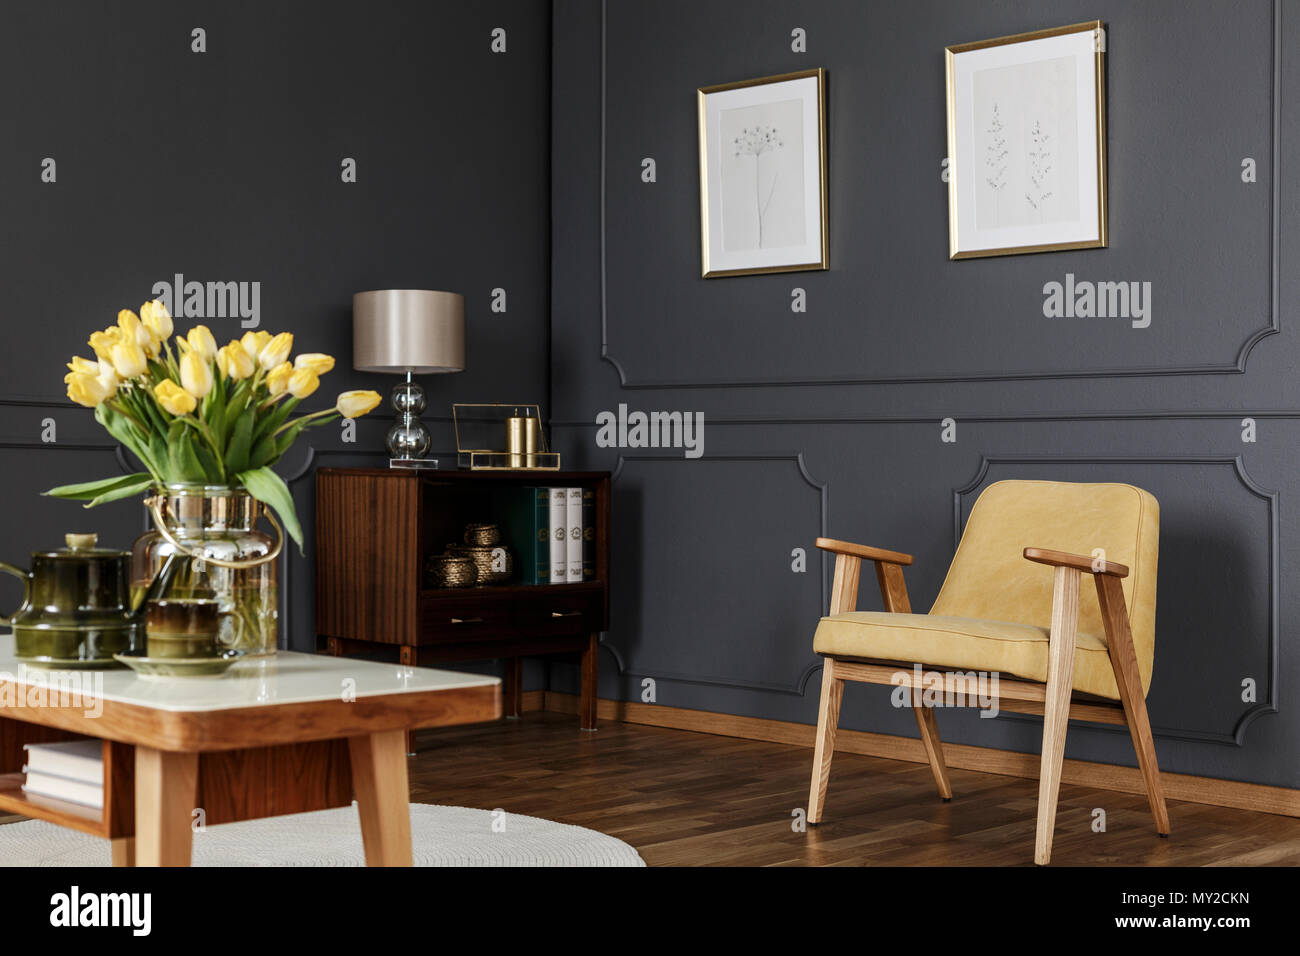 Armoire en bois dans le coin d'une salle de séjour avec boiseries d'intérieur avec des affiches sur le mur à côté d'un fauteuil et table jaune avec des tulipes. Banque D'Images